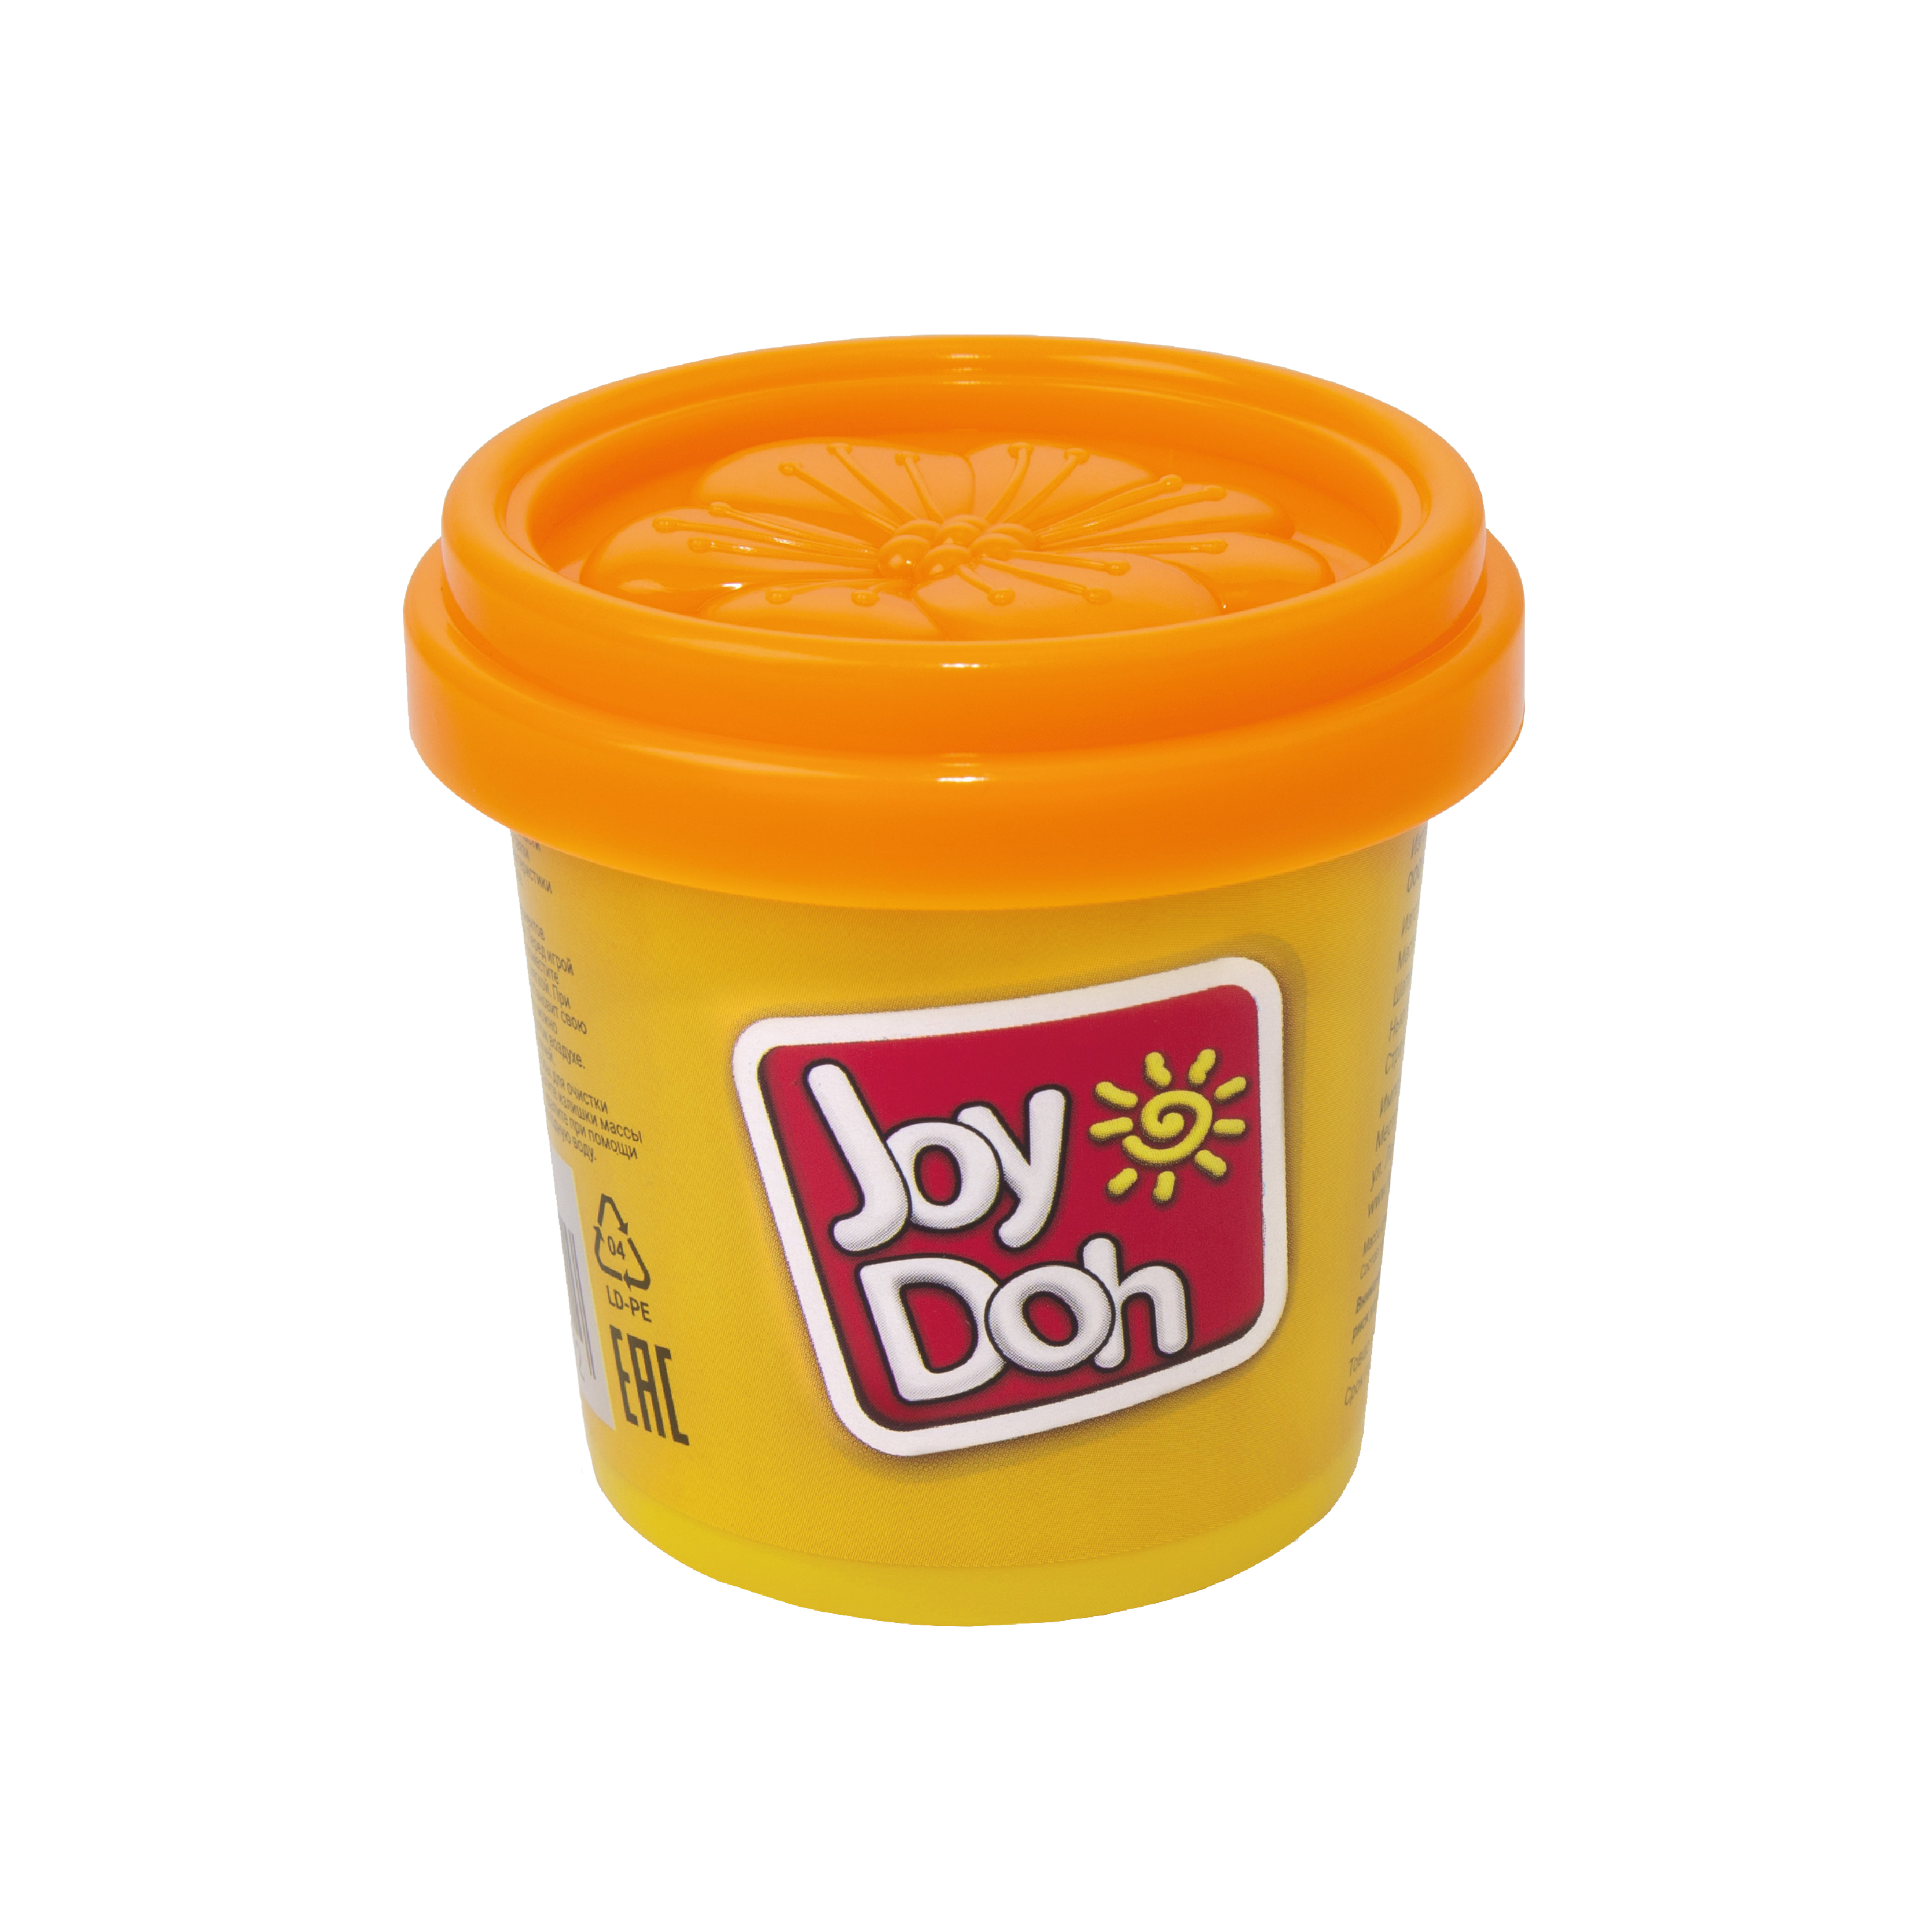 Масса для лепки Joy-Doh, 1 баночка (112 грамм)